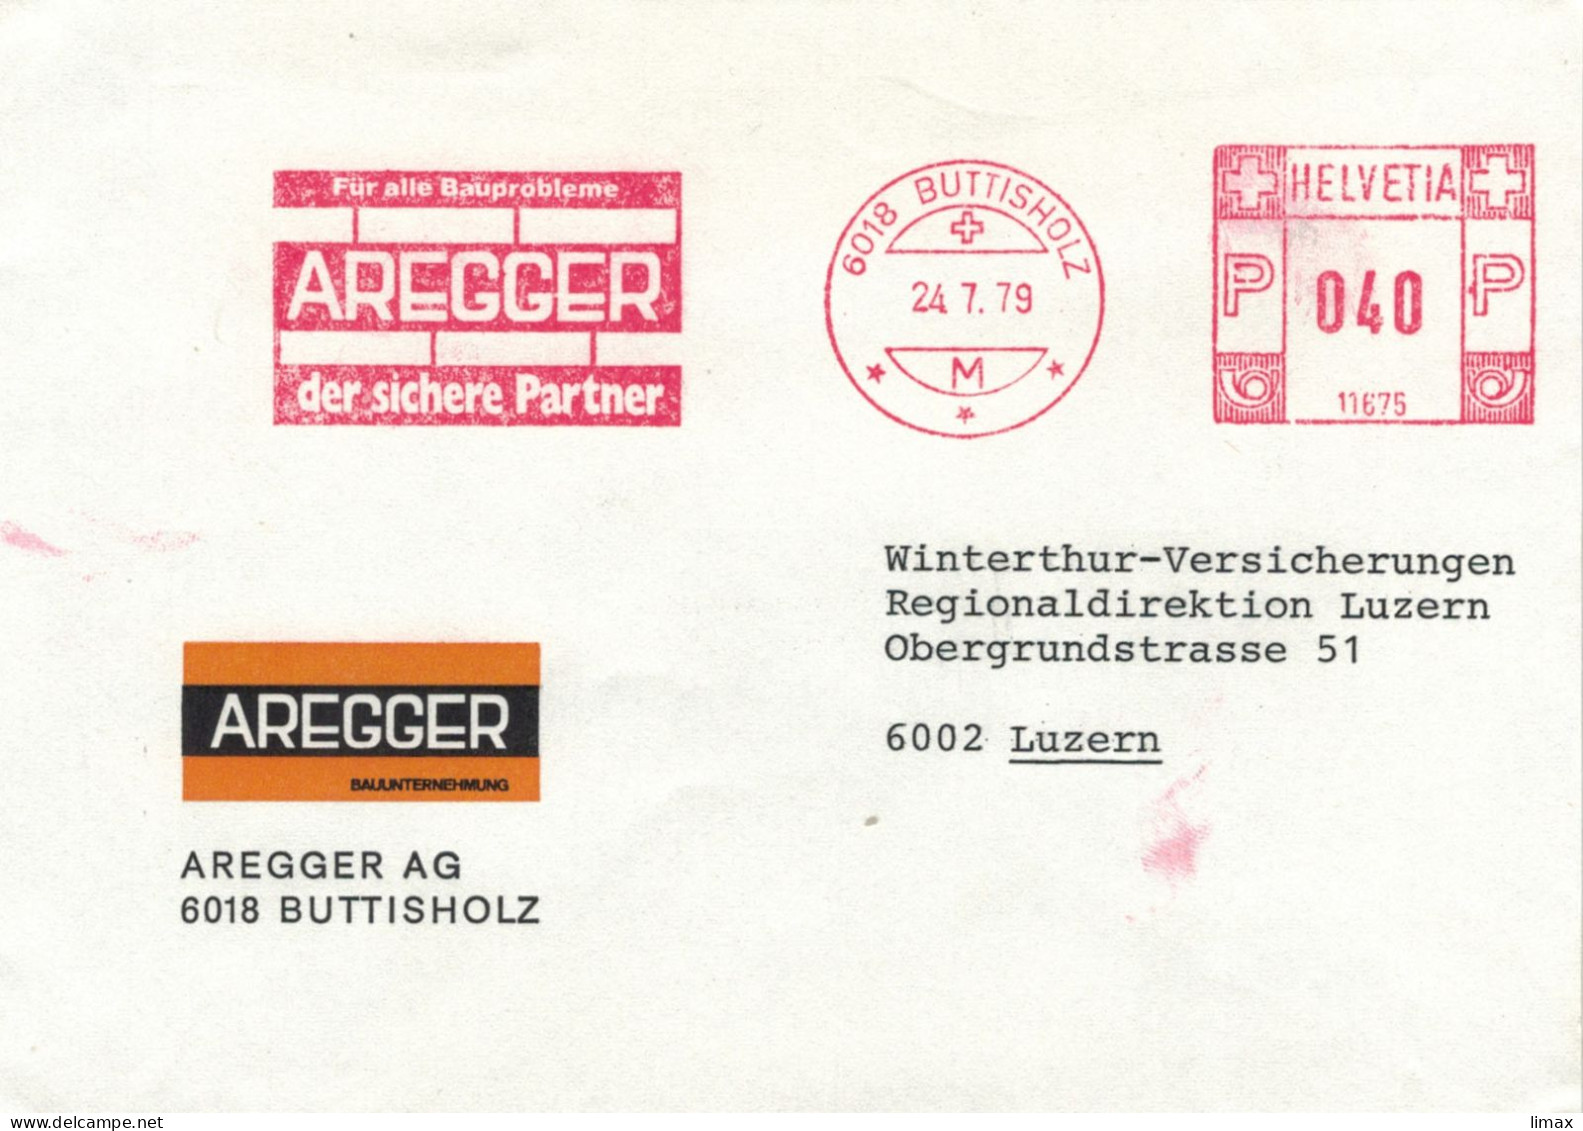 Aregger 6018 Buttisholz 1979 - Der Sichere Partner Für Alle Bauprobleme Stempel 11675 > Luzern - Affranchissements Mécaniques